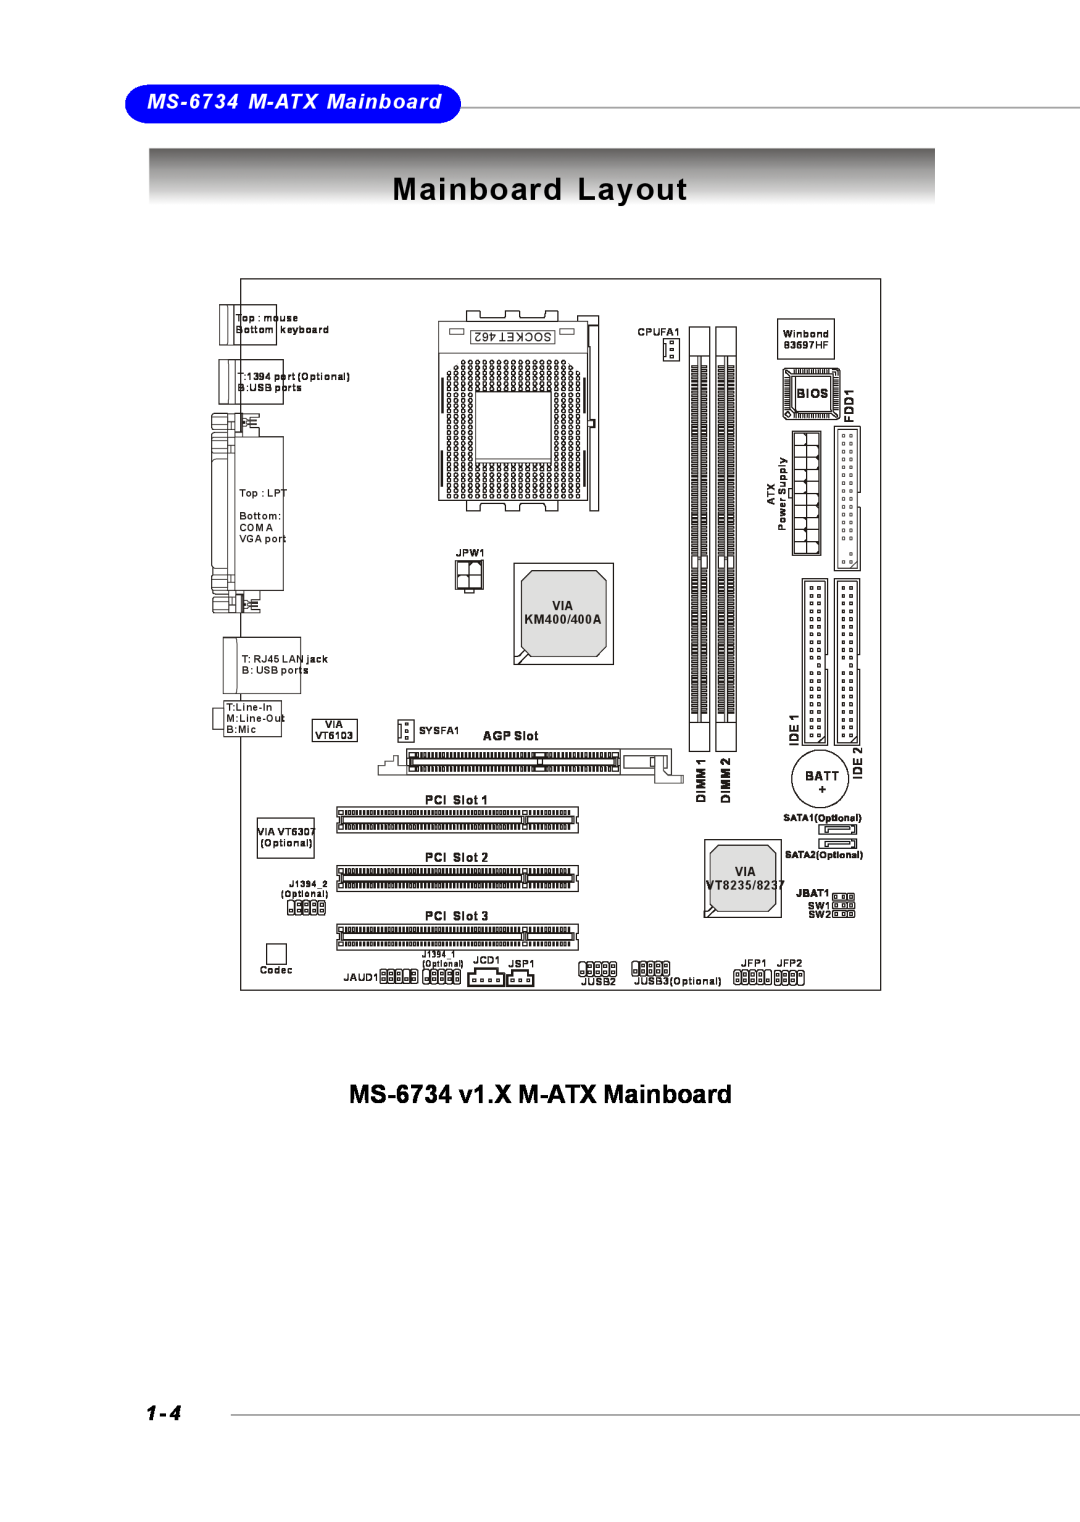 Intel Mainboard Layout, MS-6734 v1.X M-ATX Mainboard, MS-6734 M-ATX Mainboard, Tekcos, Bios, FDD1, VIA KM400/400A, Batt 